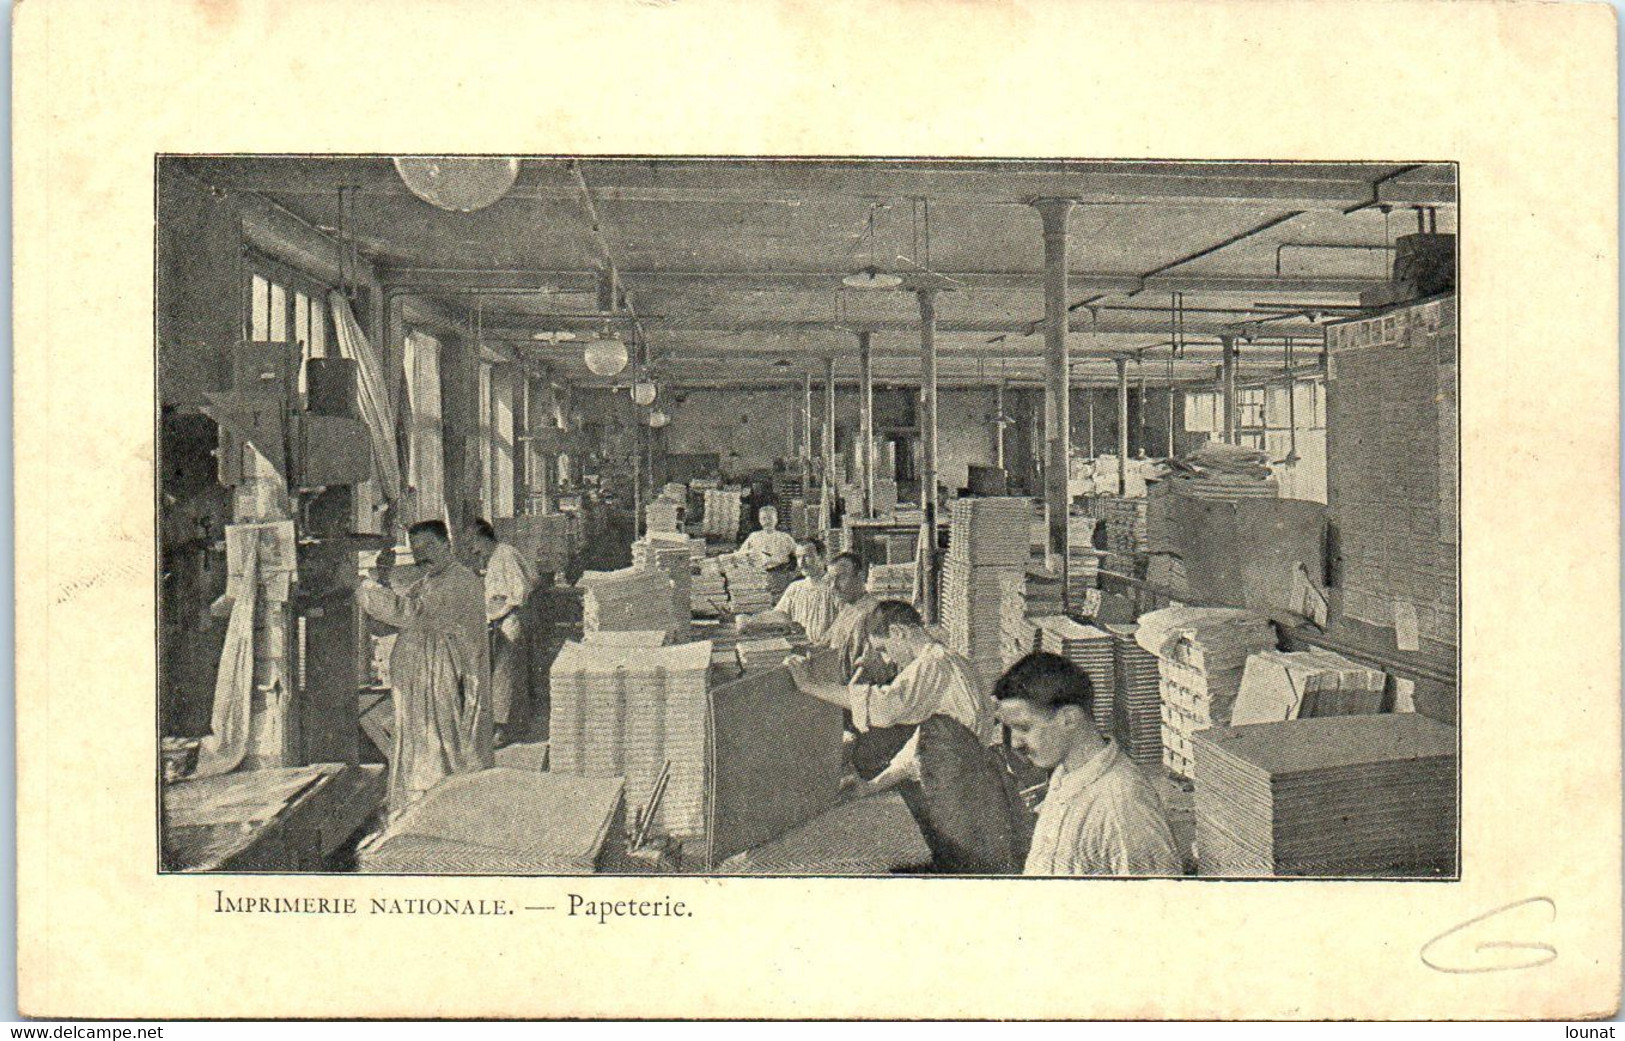 Métier - Imprimerie Nationale - Papeterie  - Paris - Industrial